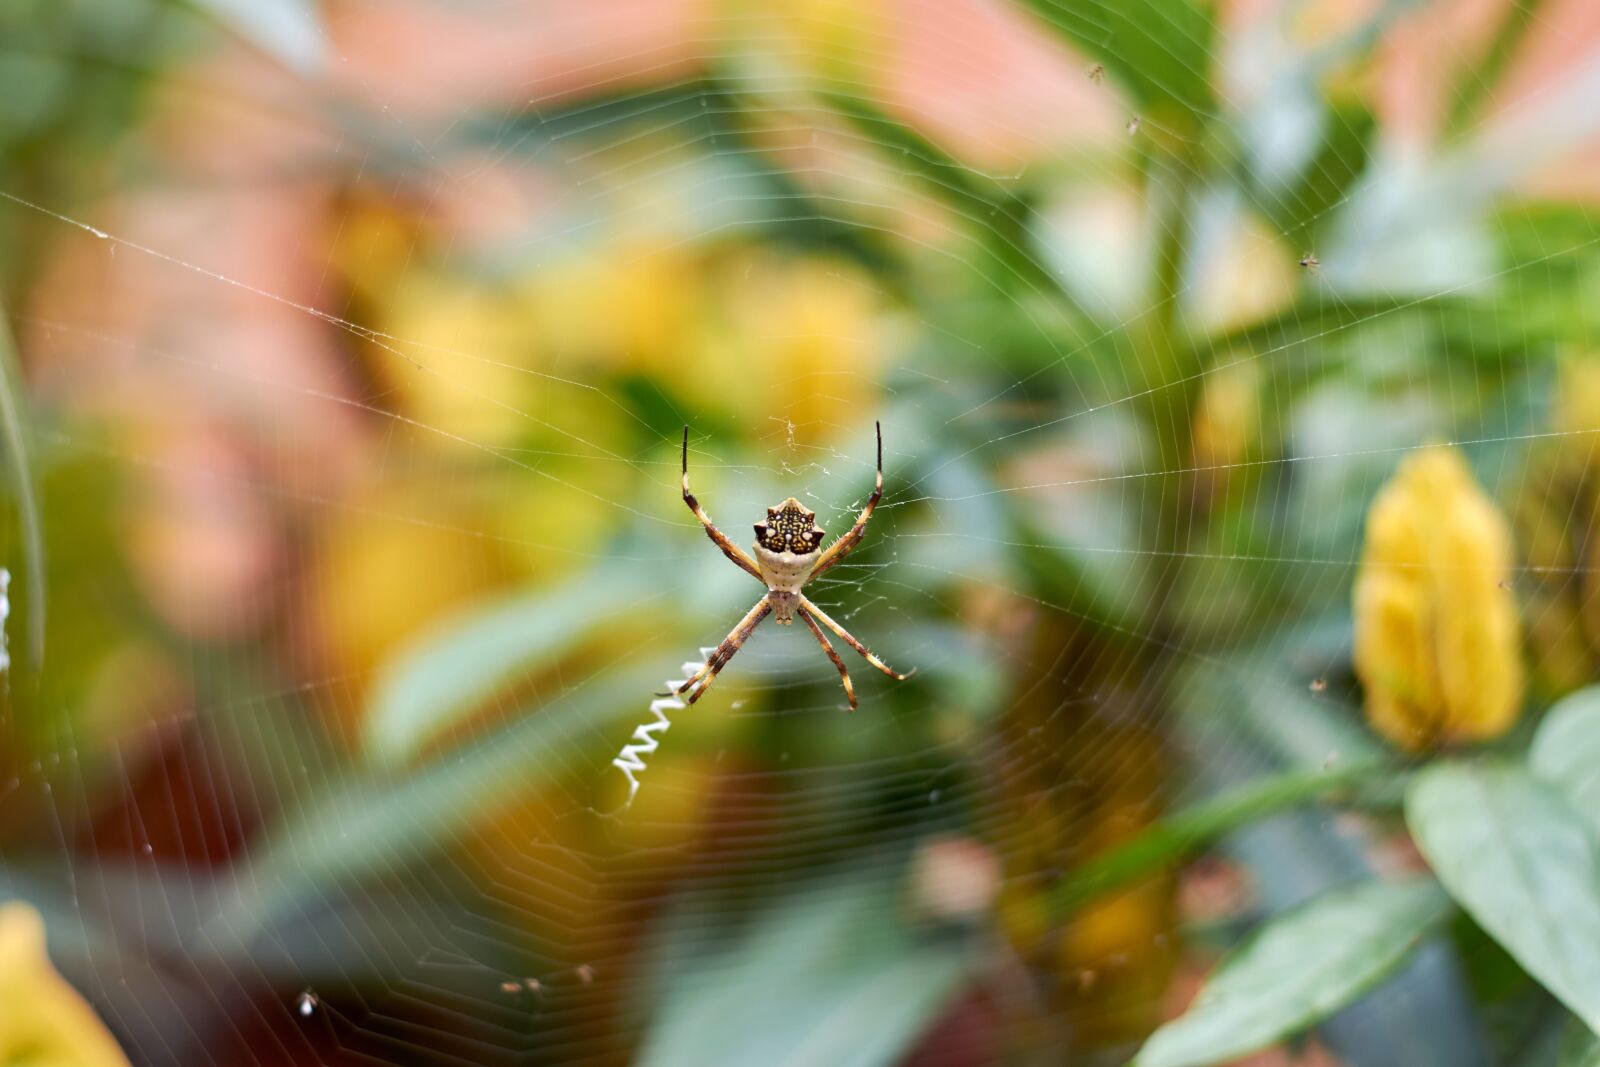 Nikon AF-S Nikkor 50mm F1.8G sample photo. Spider, garden, nature photography